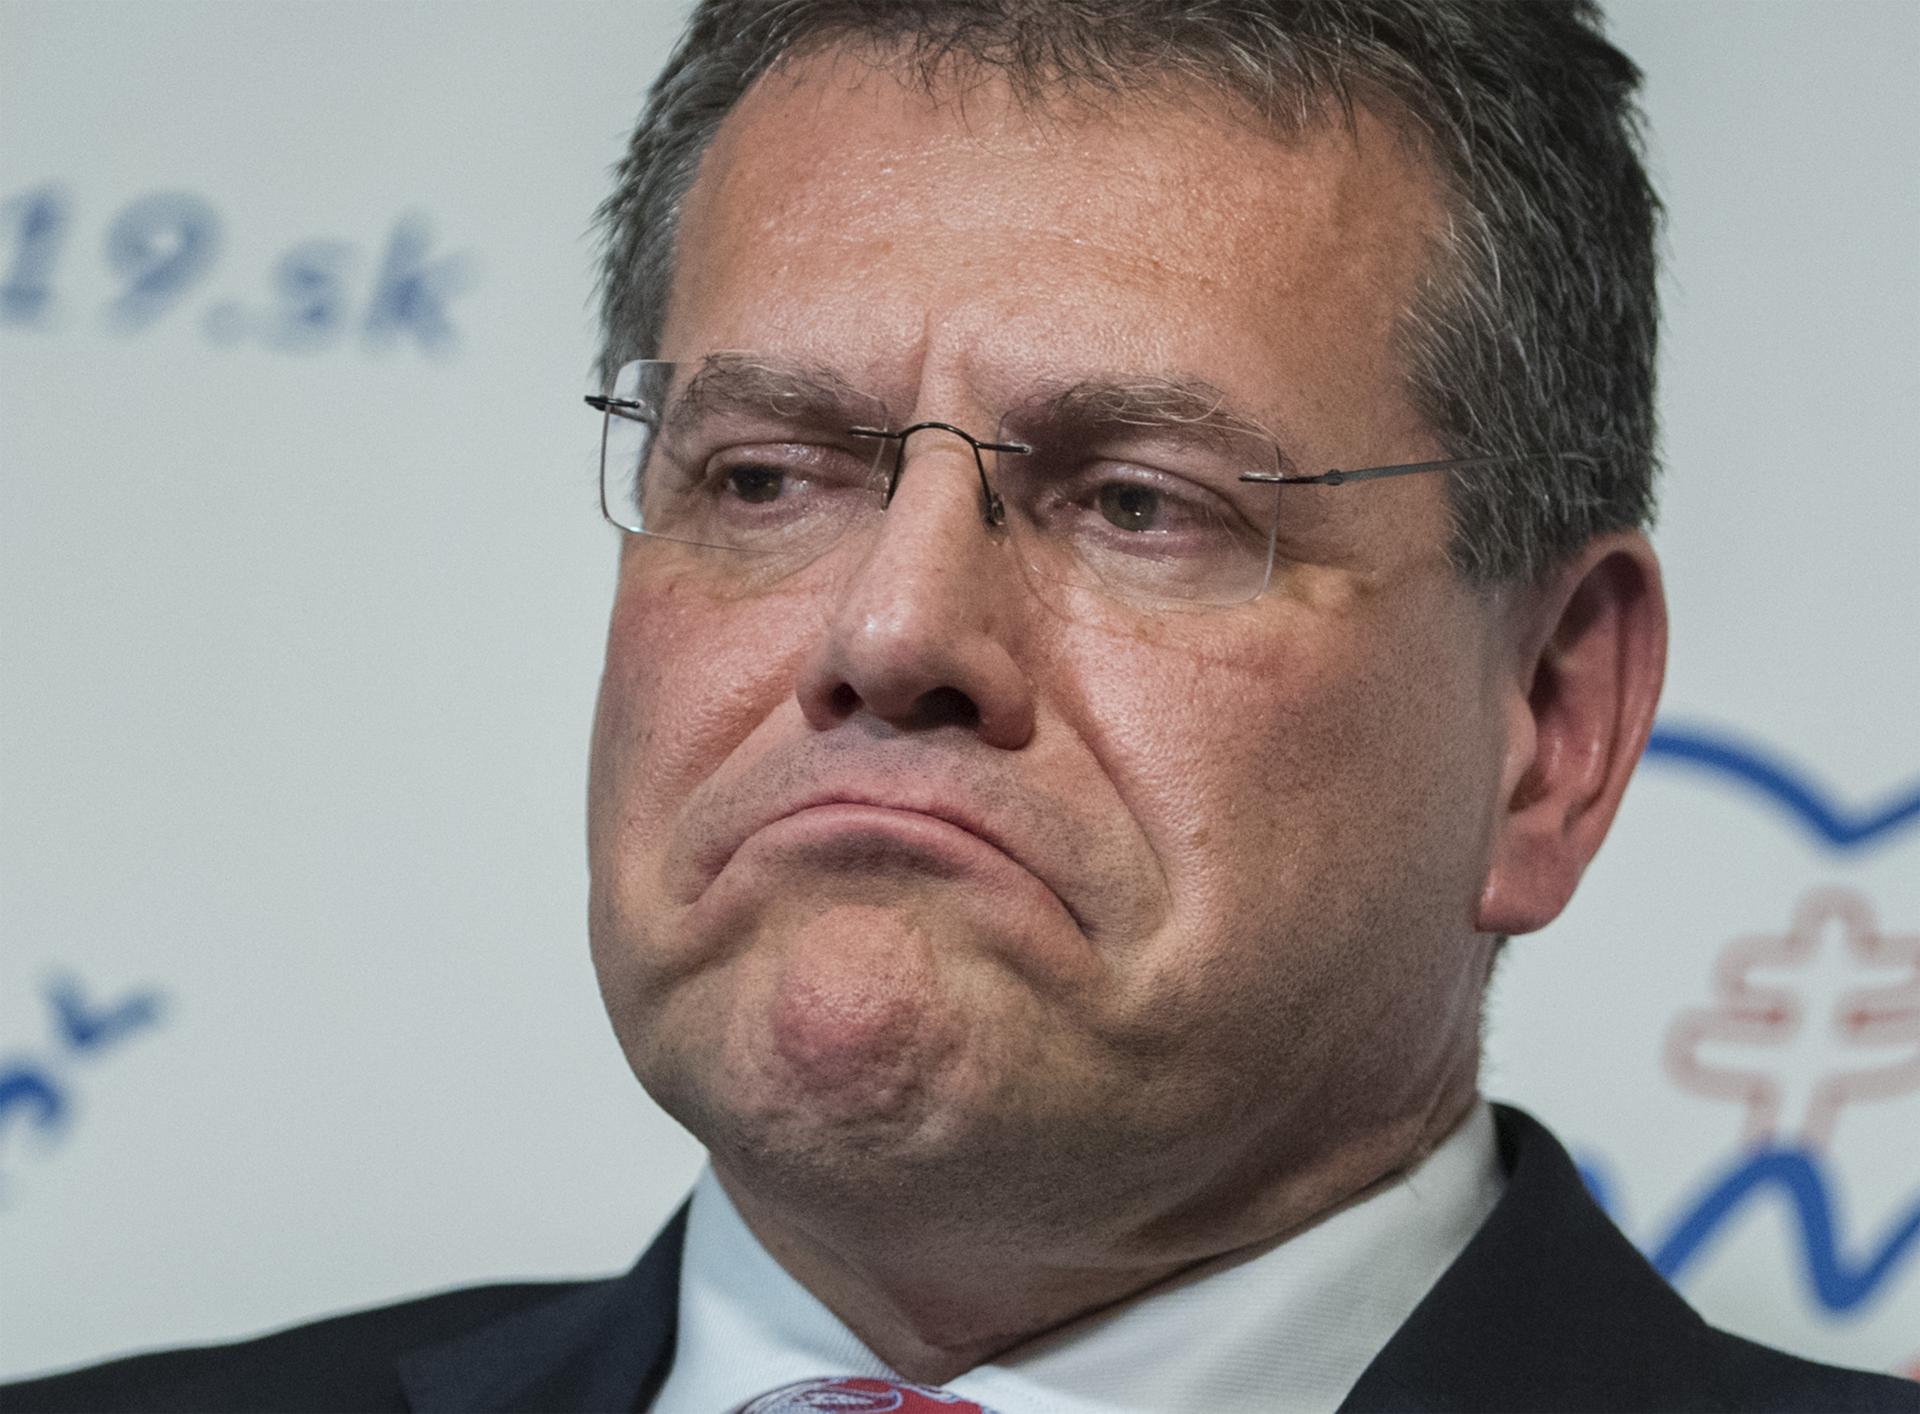 Vláda na post eurokomisára za Slovensko podporuje Šefčoviča. Má silné postavenie, tvrdí Fico